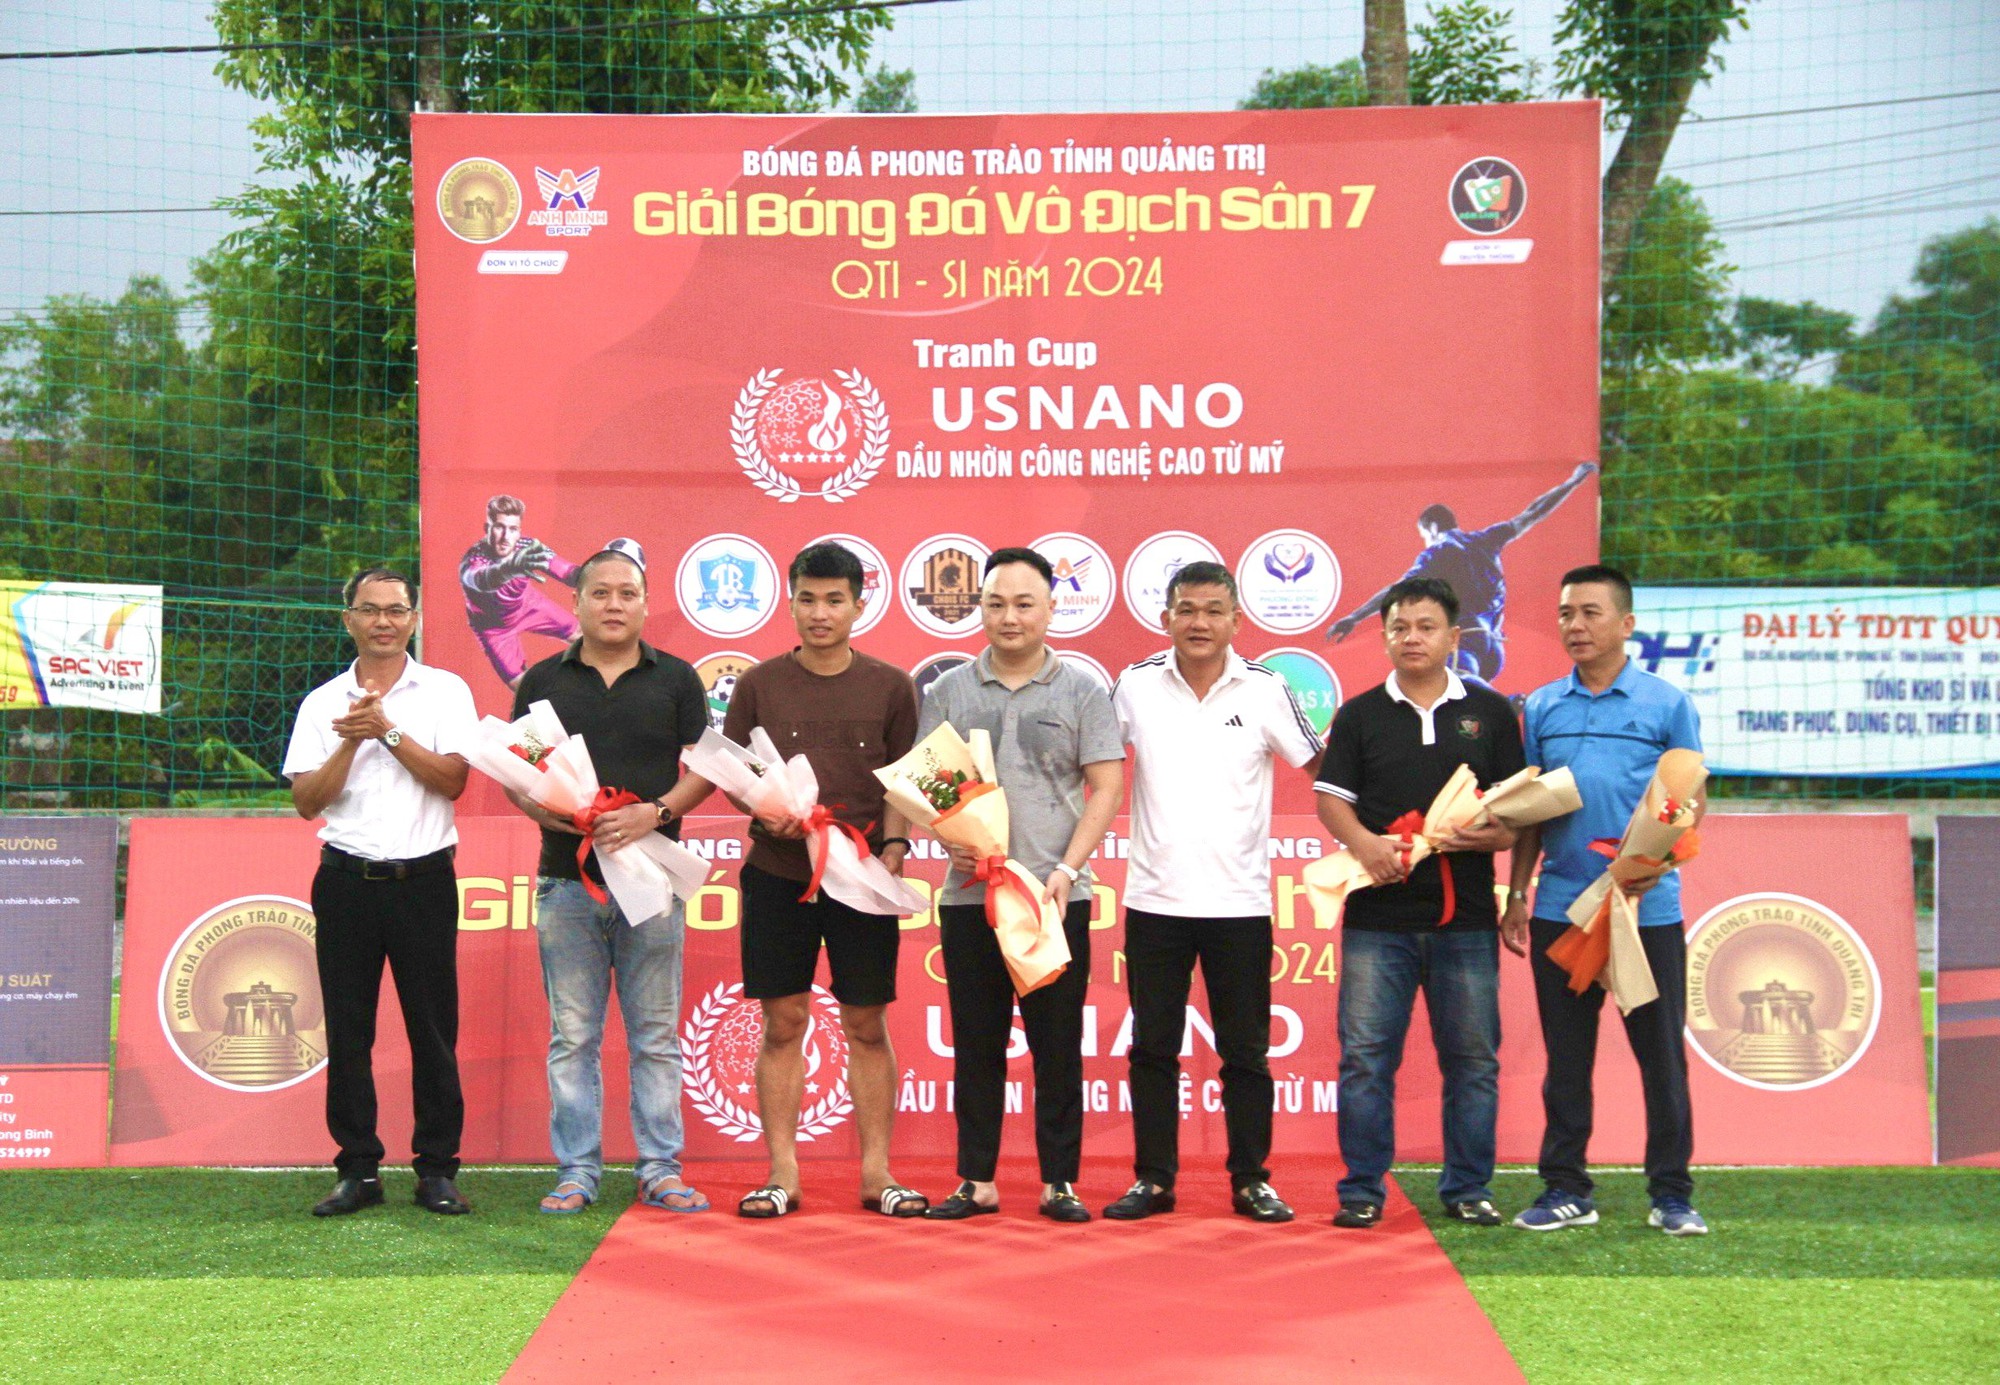 Giải Bóng đá vô địch sân 7 tỉnh Quảng Trị lần thứ I – năm 2024 - Ảnh 1.